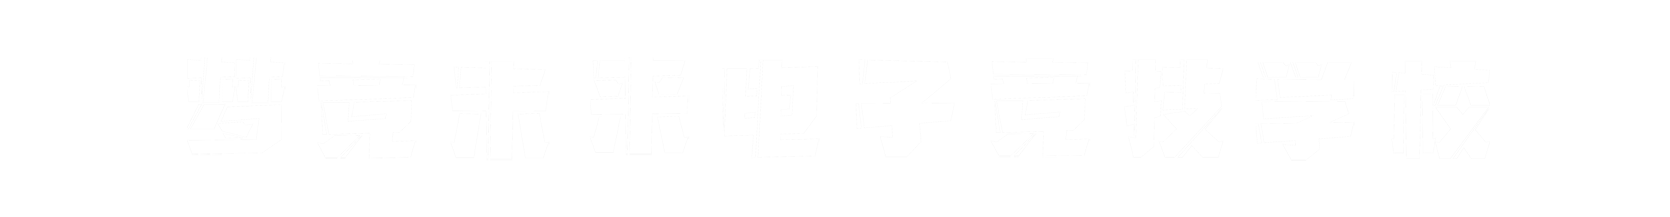 梦竞未来湖南banner字